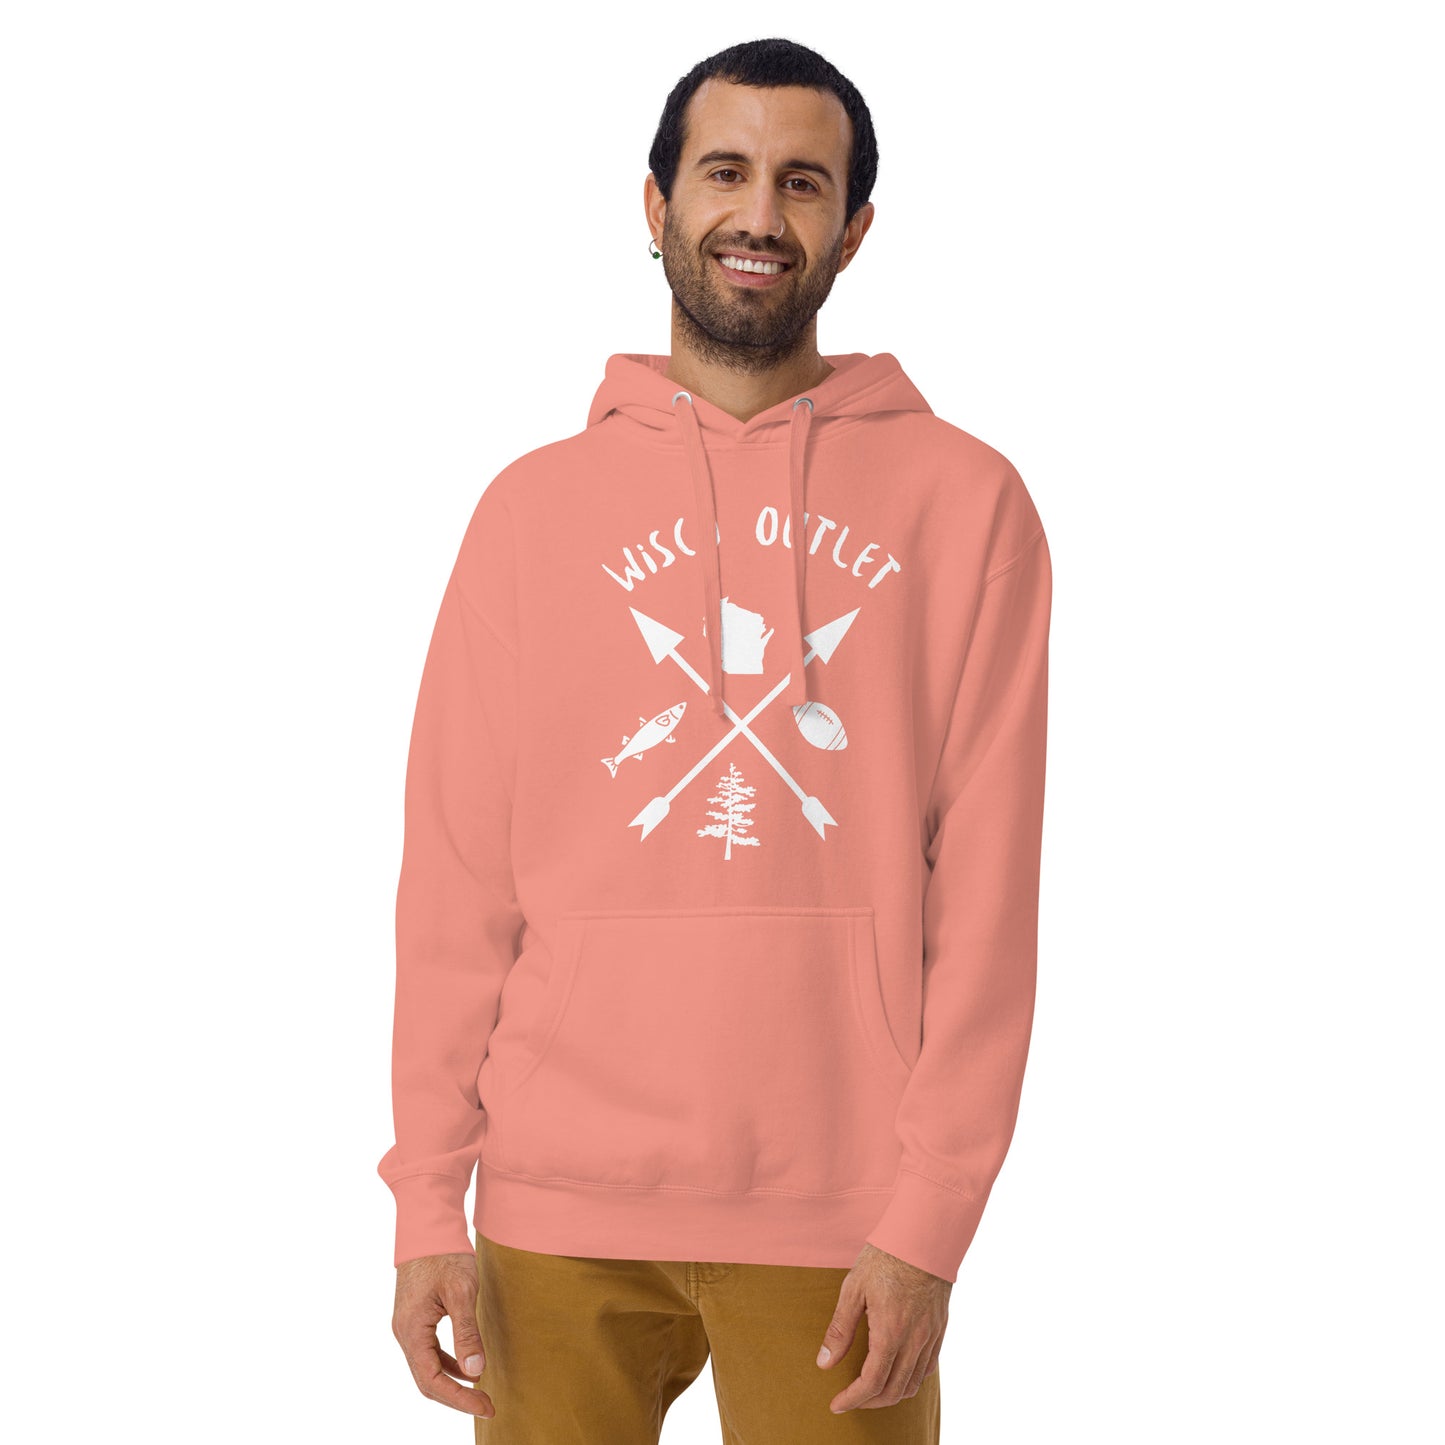 Wisco Outlet Arrows Sweatshirt